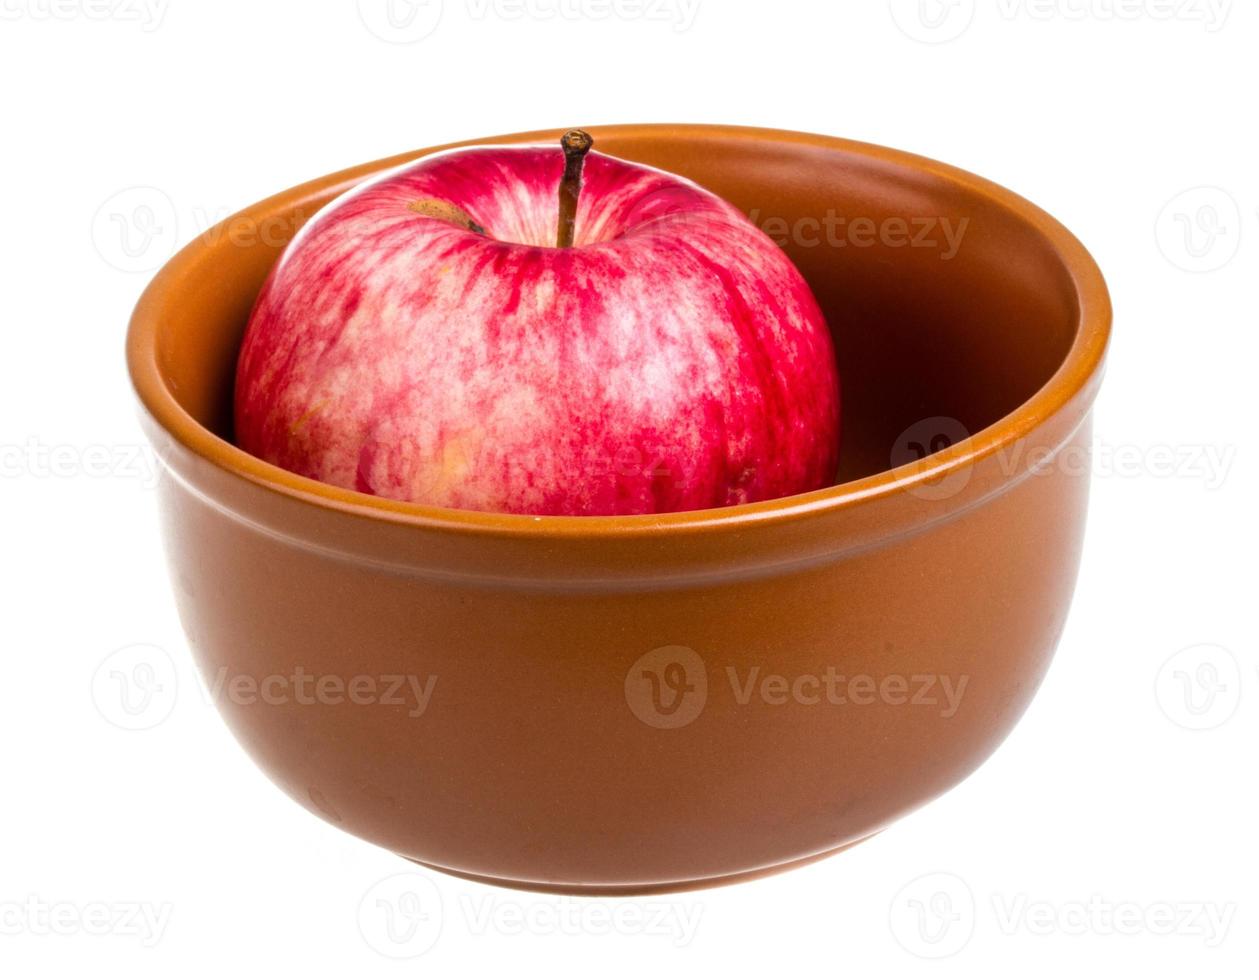 maçãs vermelhas frescas no prato isolado no fundo branco foto